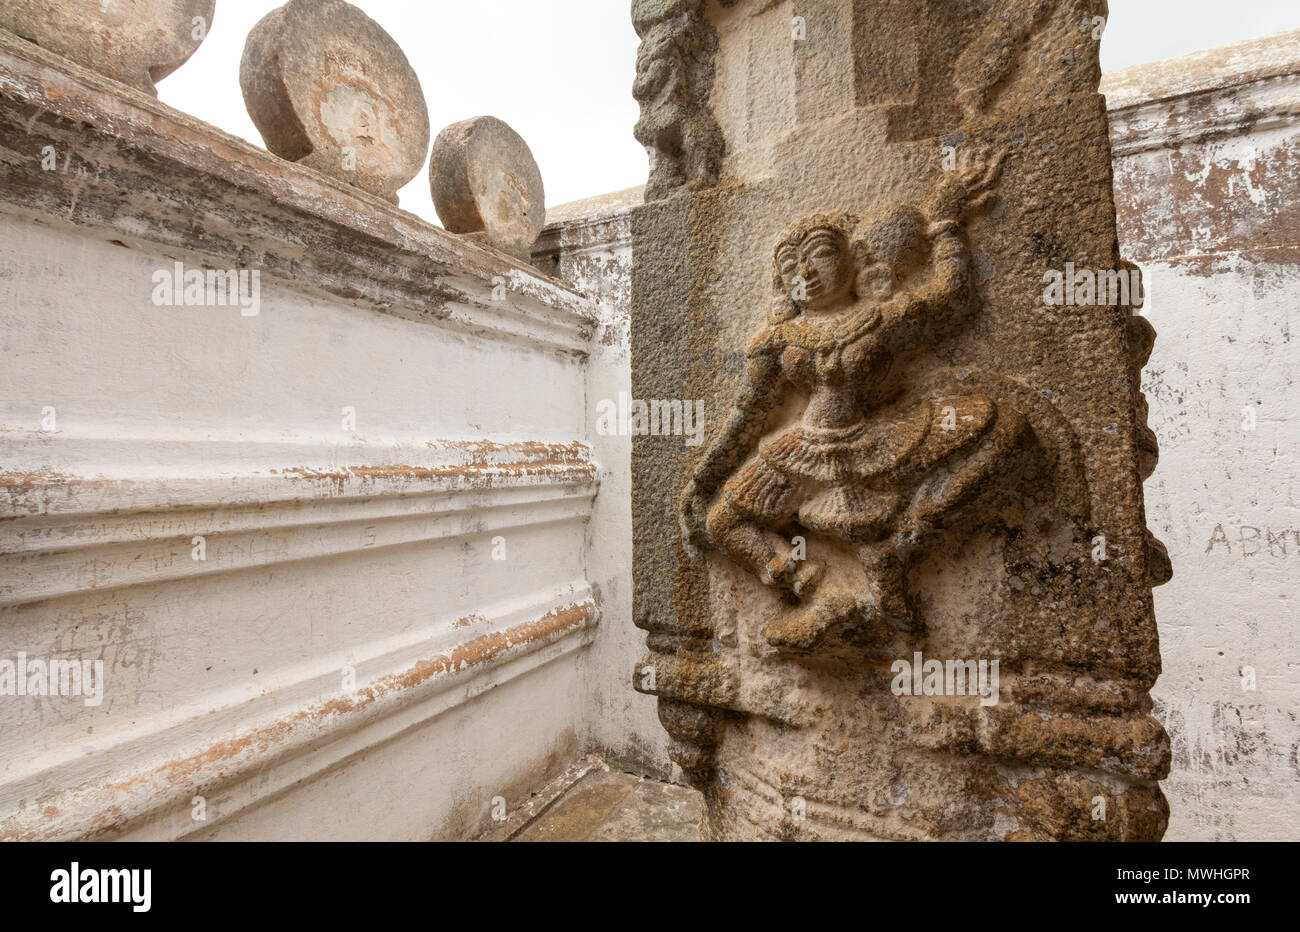 Architektonische Details der Bahubali gomateshwara Tempel. Skulpturen Hindu-jain Gottheiten an den Wänden gesehen. Stockfoto